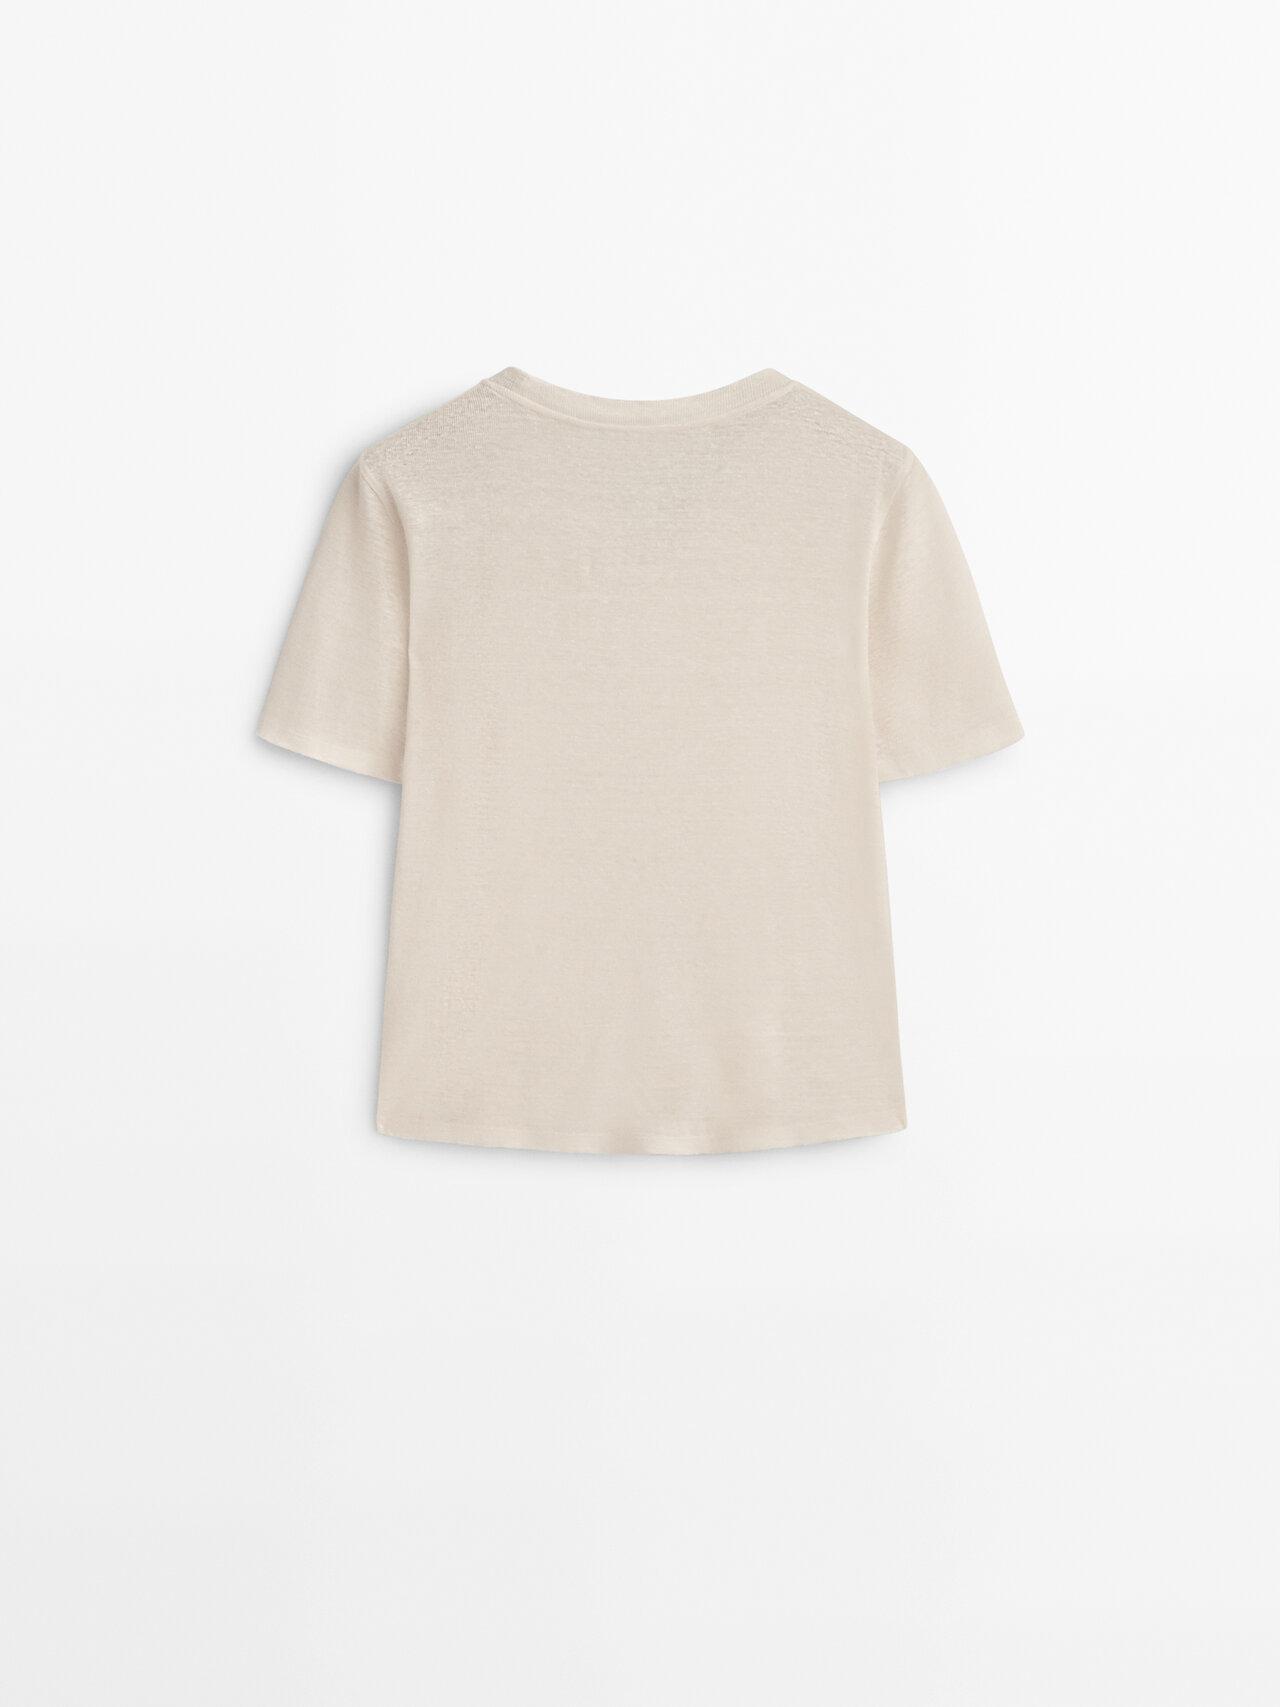 MASSIMO DUTTI 100% Linen Short Sleeve T-shirt in White | Lyst